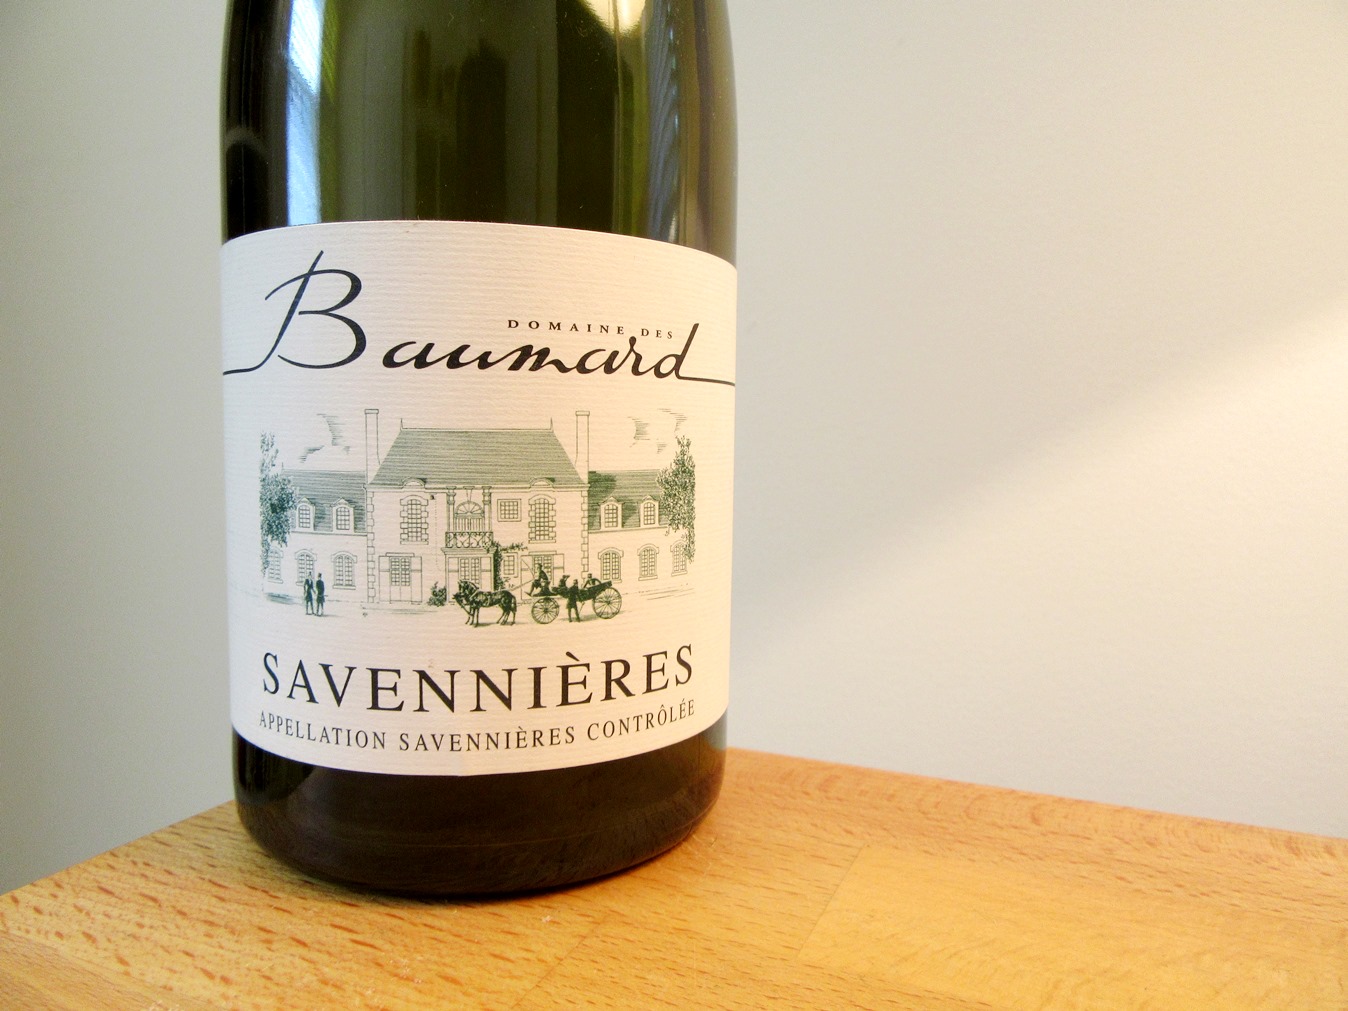 Domaine des Baumard, Savennières 2014, Loire, France, Wine Casual